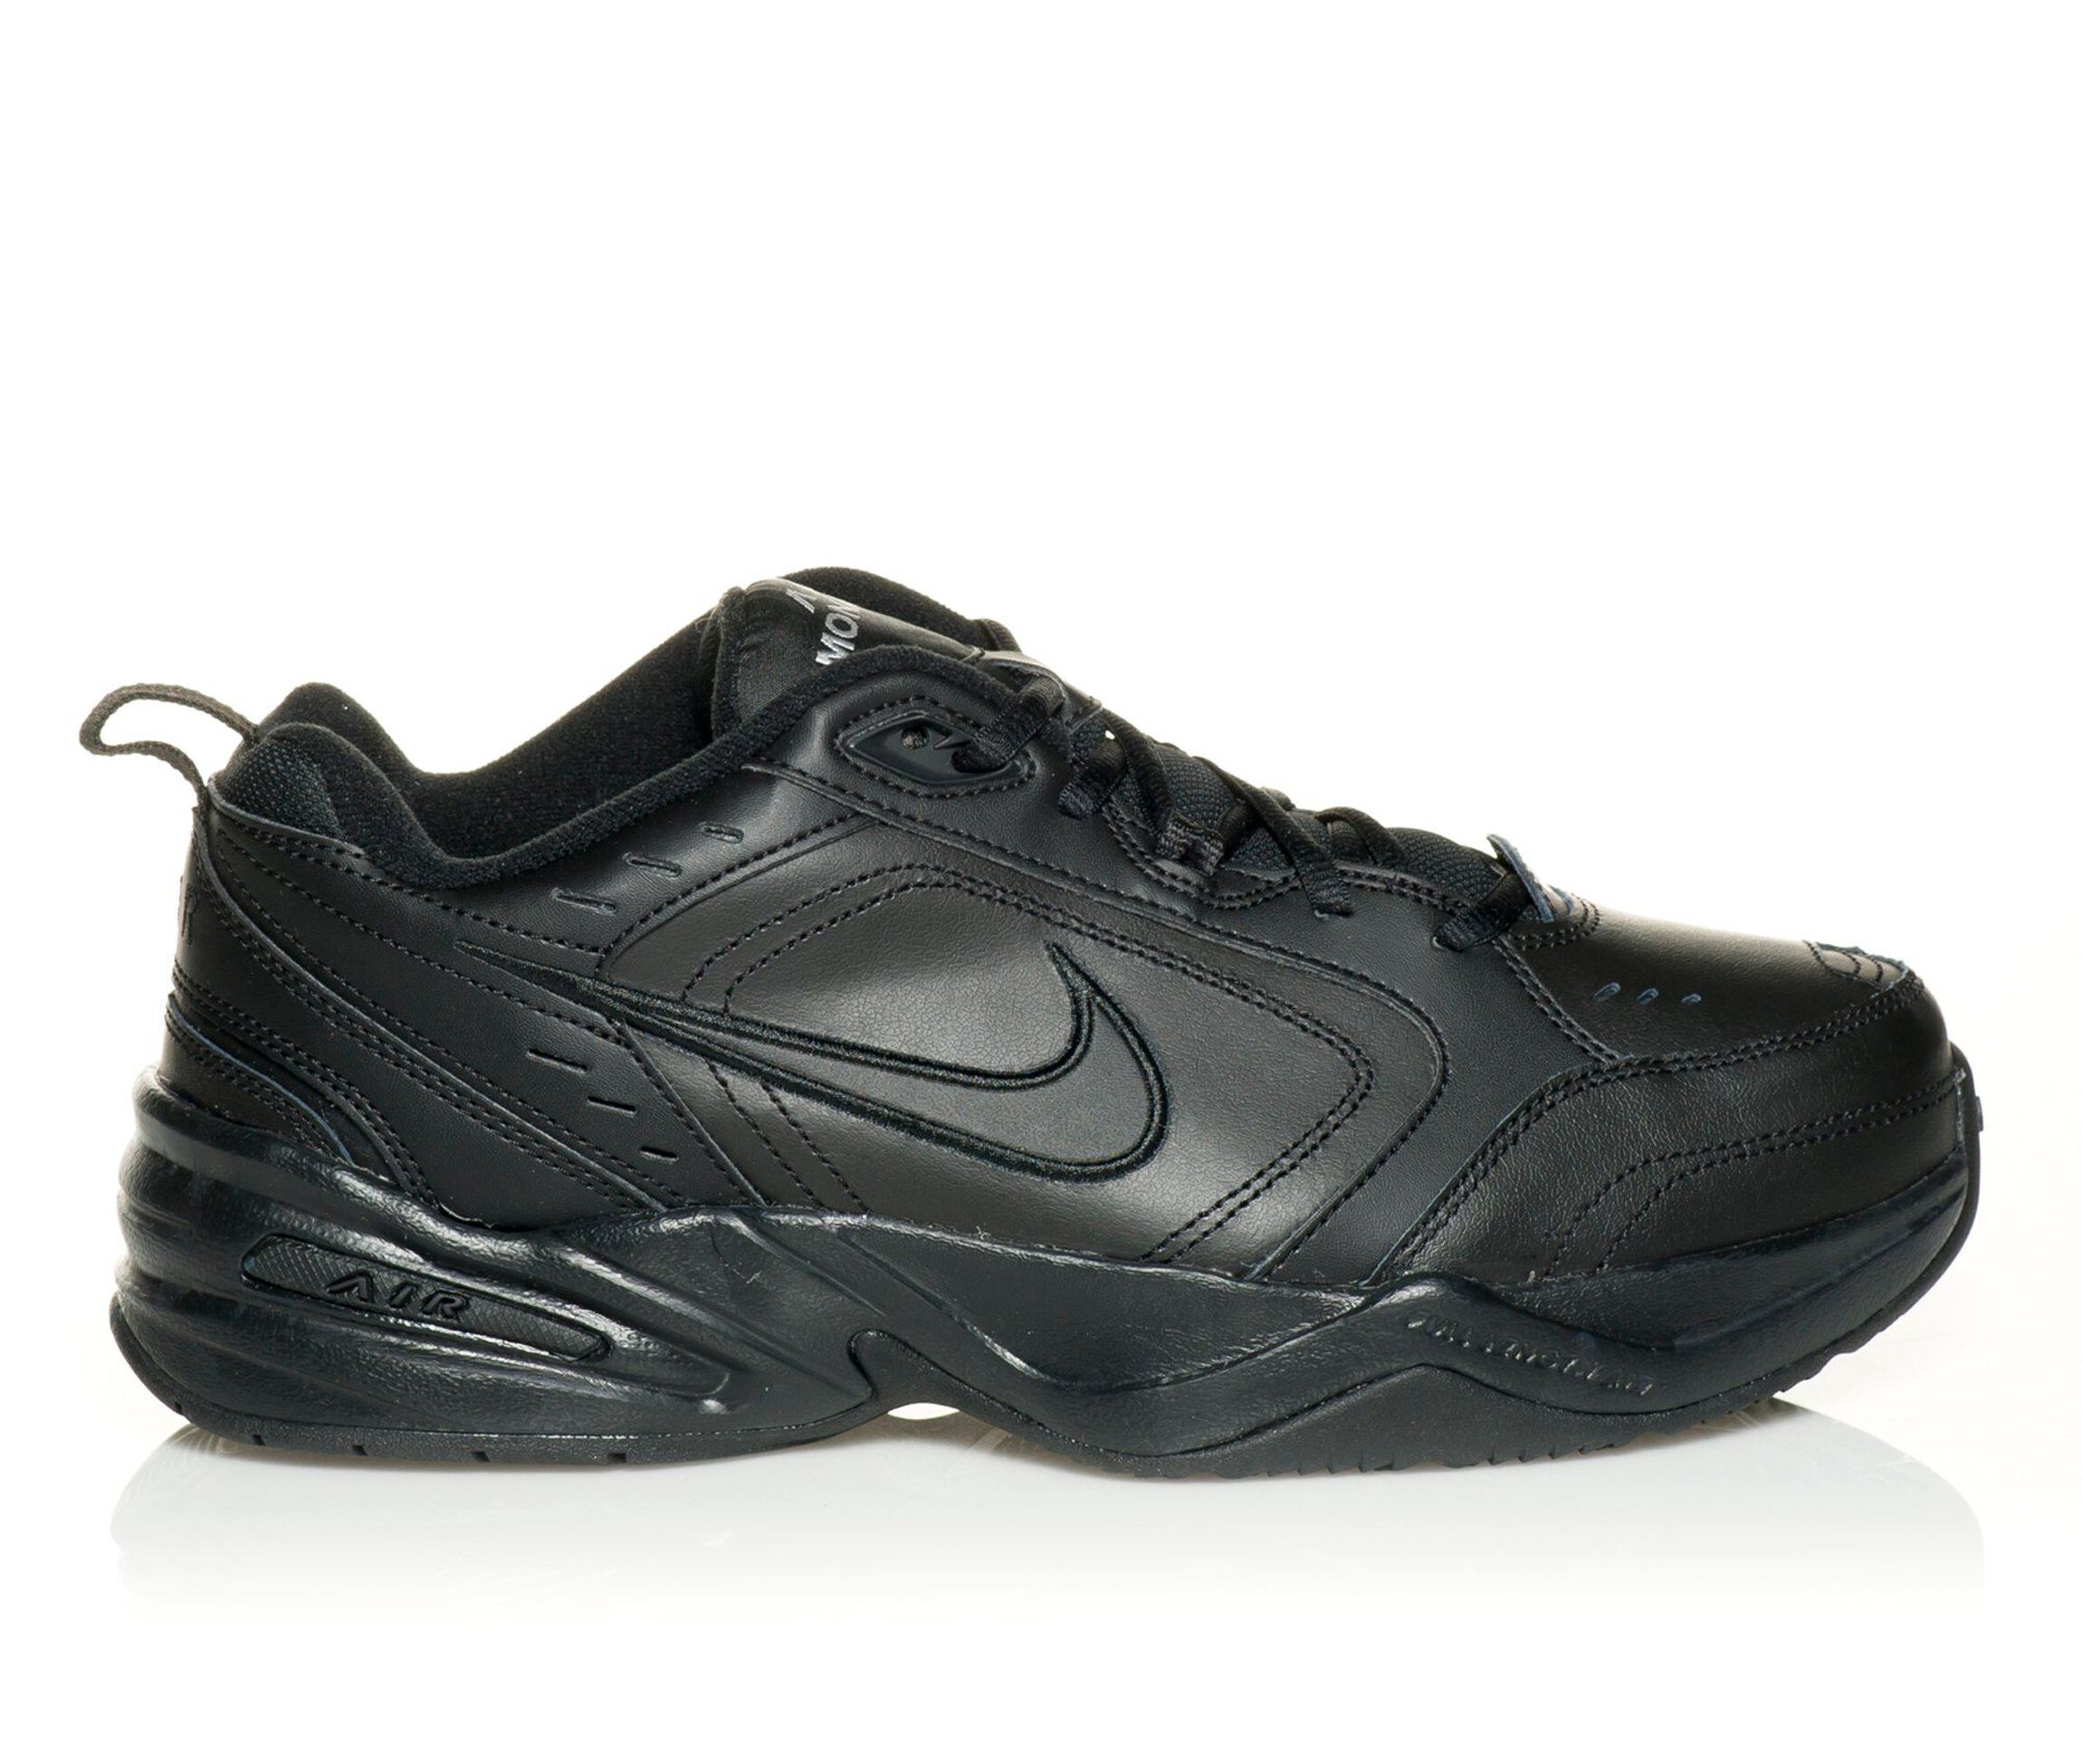 Men's Athletic Shoes | Shoe Carnival